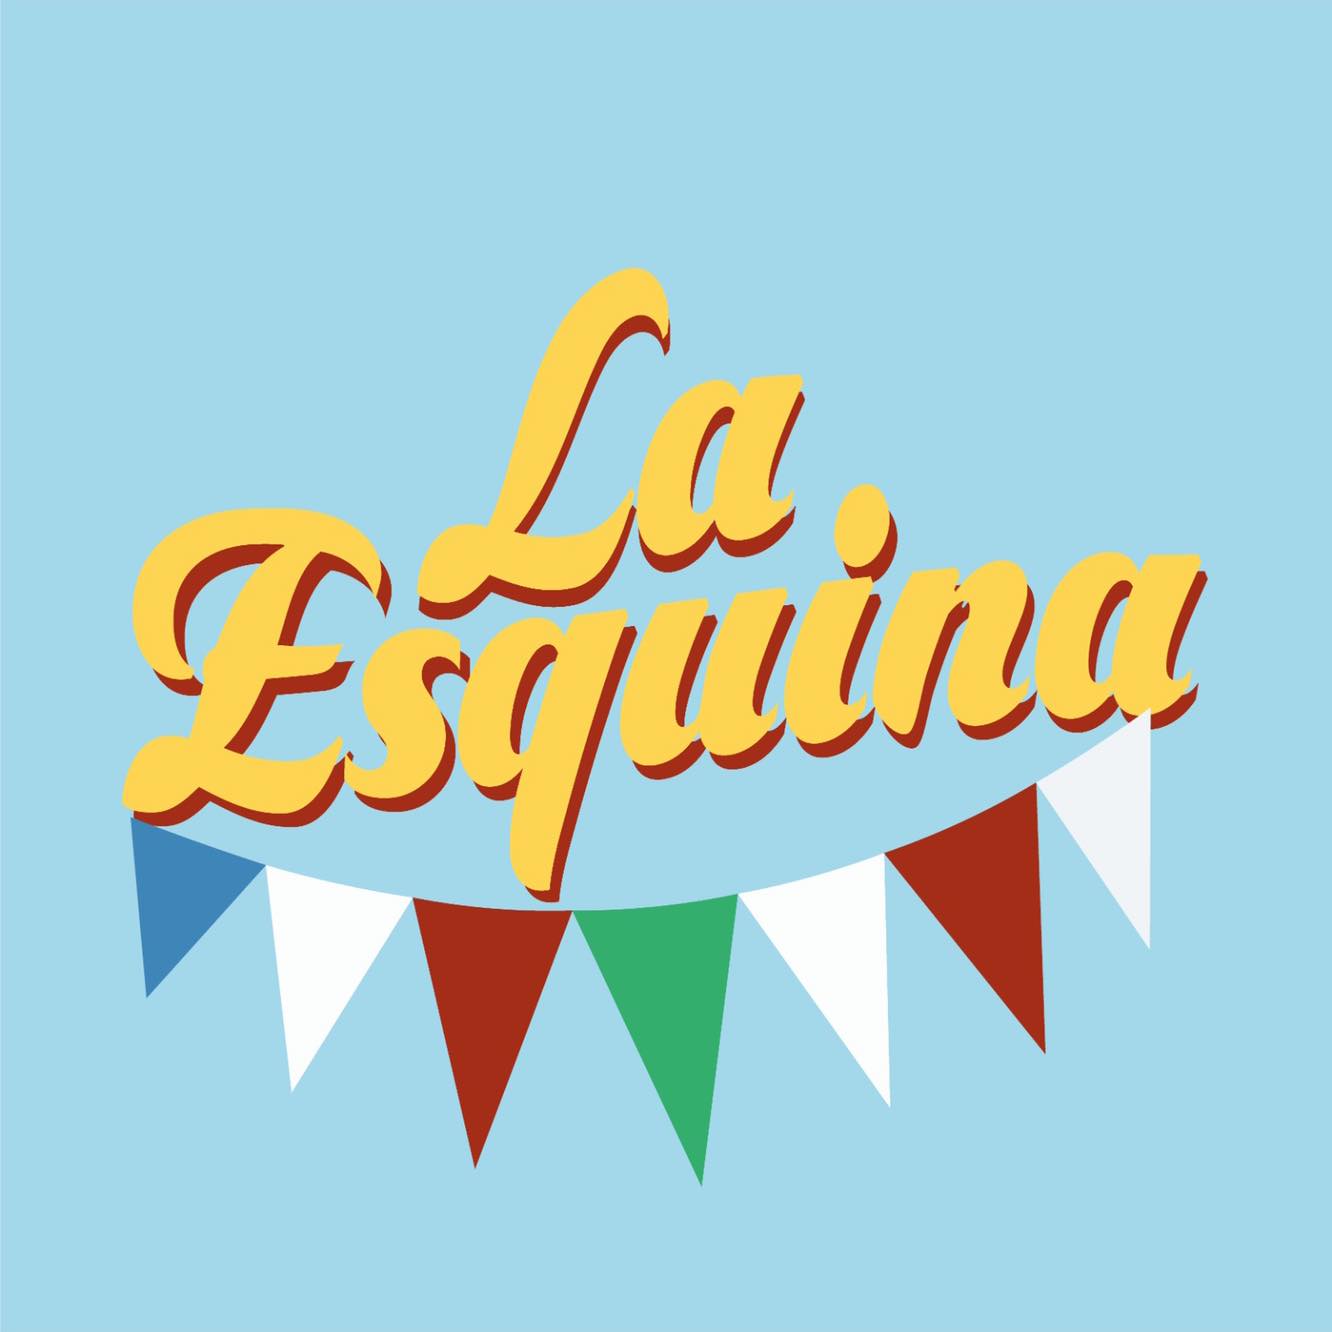 Restaurant La Esquina